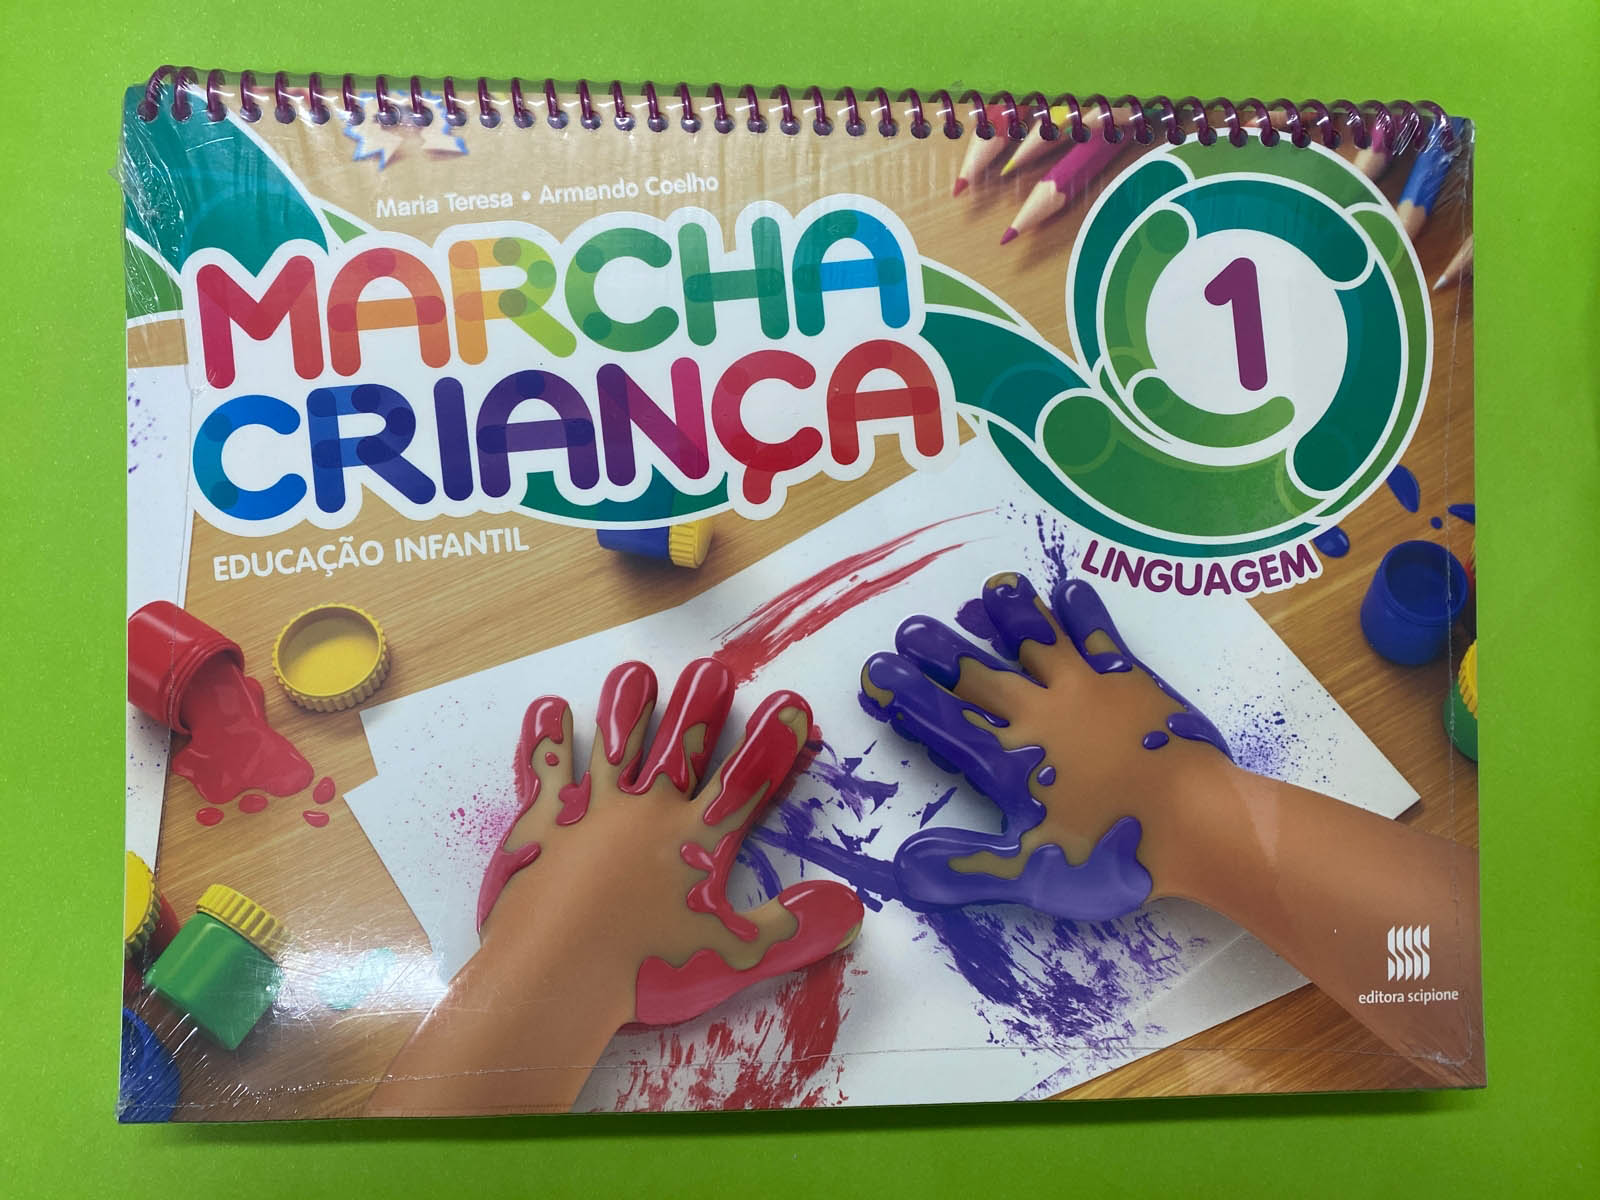 Marcha Criança - Educação Infantil - Linguagem 1